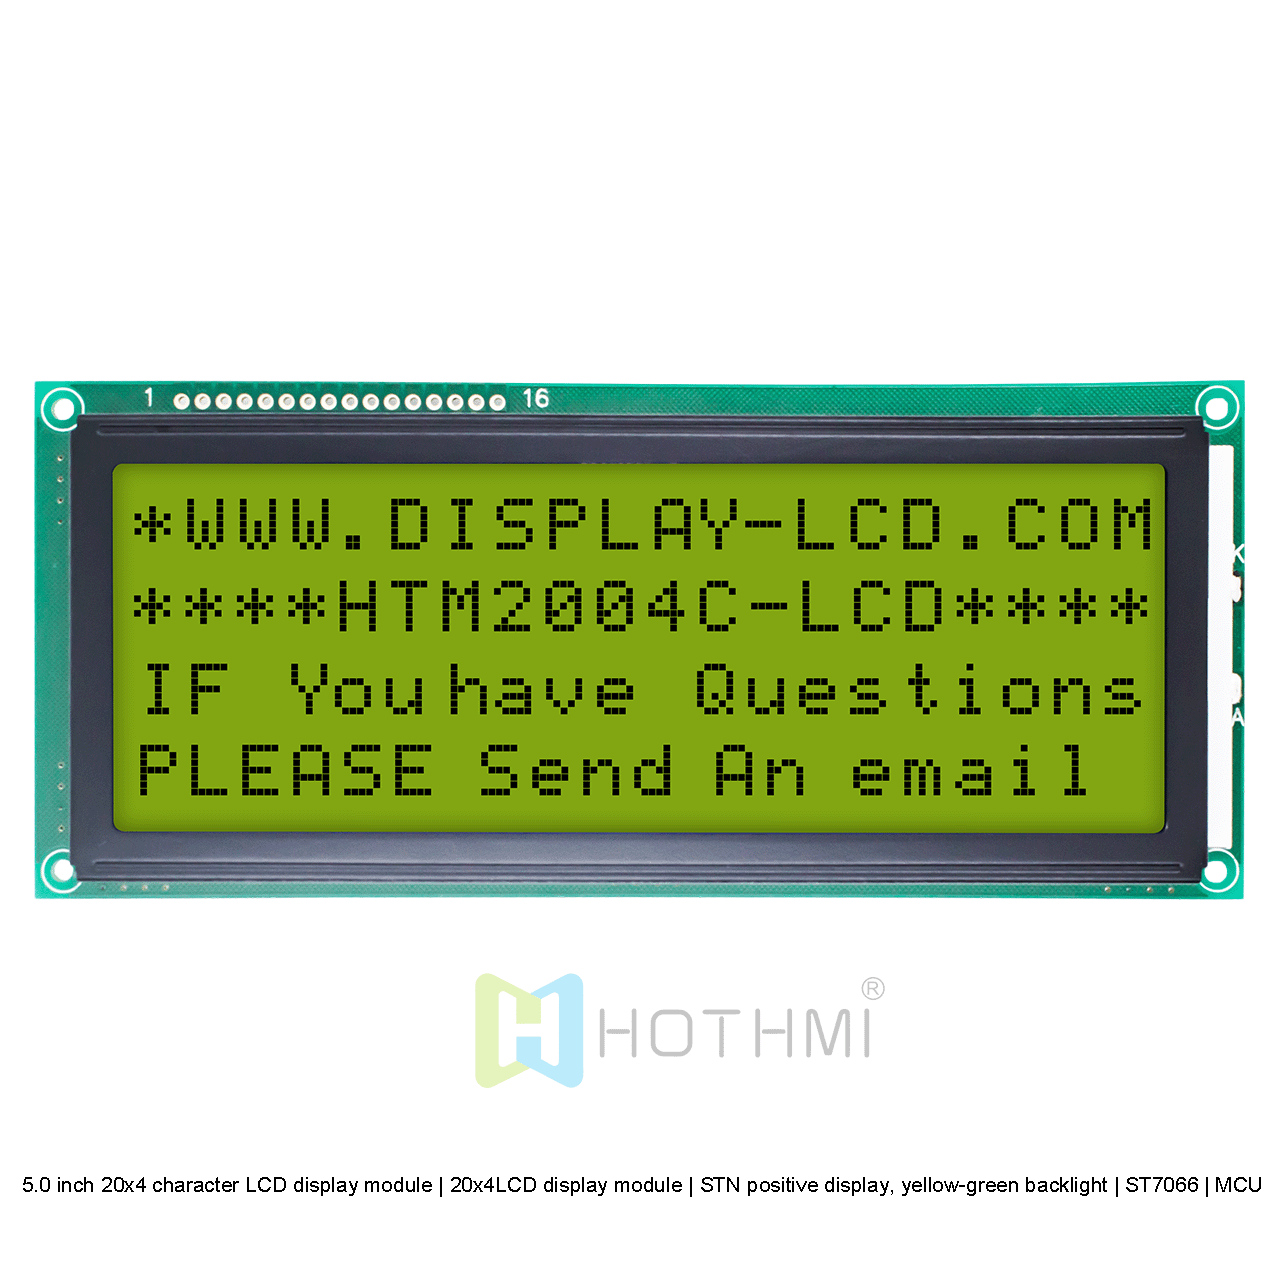 5.0英寸20x4字符液晶显示模组 | 20x4LCD 显示模块 | STN正显，黄绿色背光 | ST7066 | MCU接口